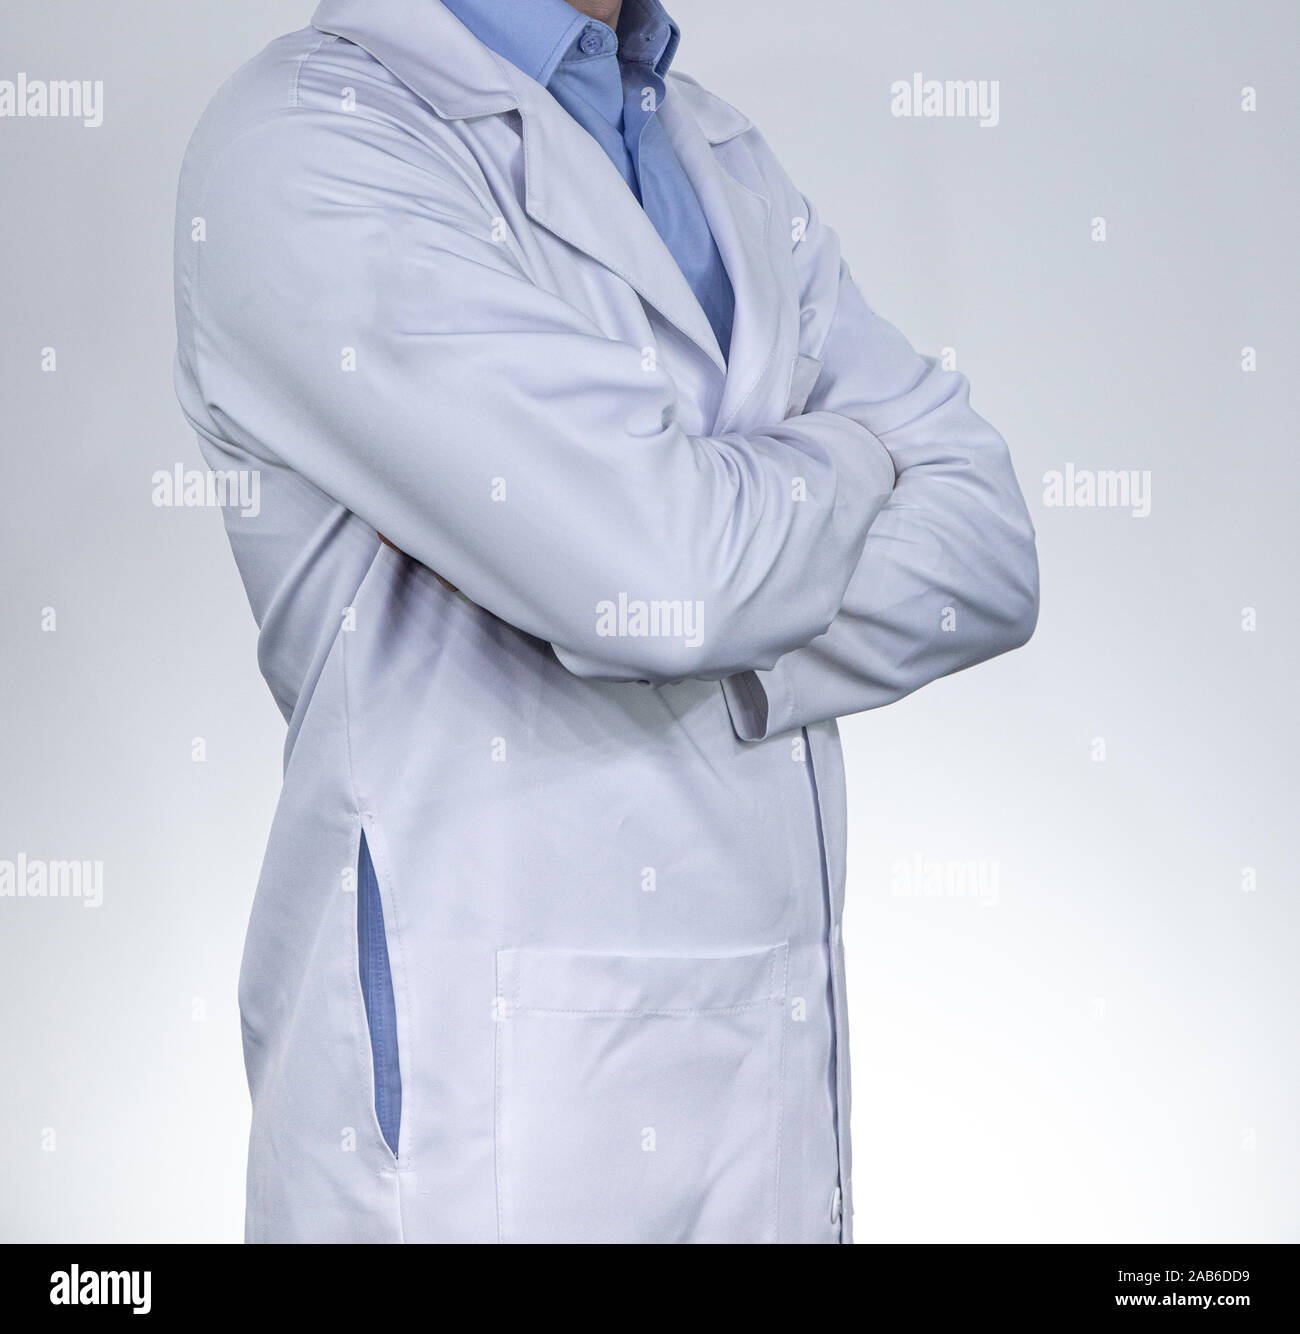 Medic professionelle Arzt einheitliche und Stethoskop Stockfoto